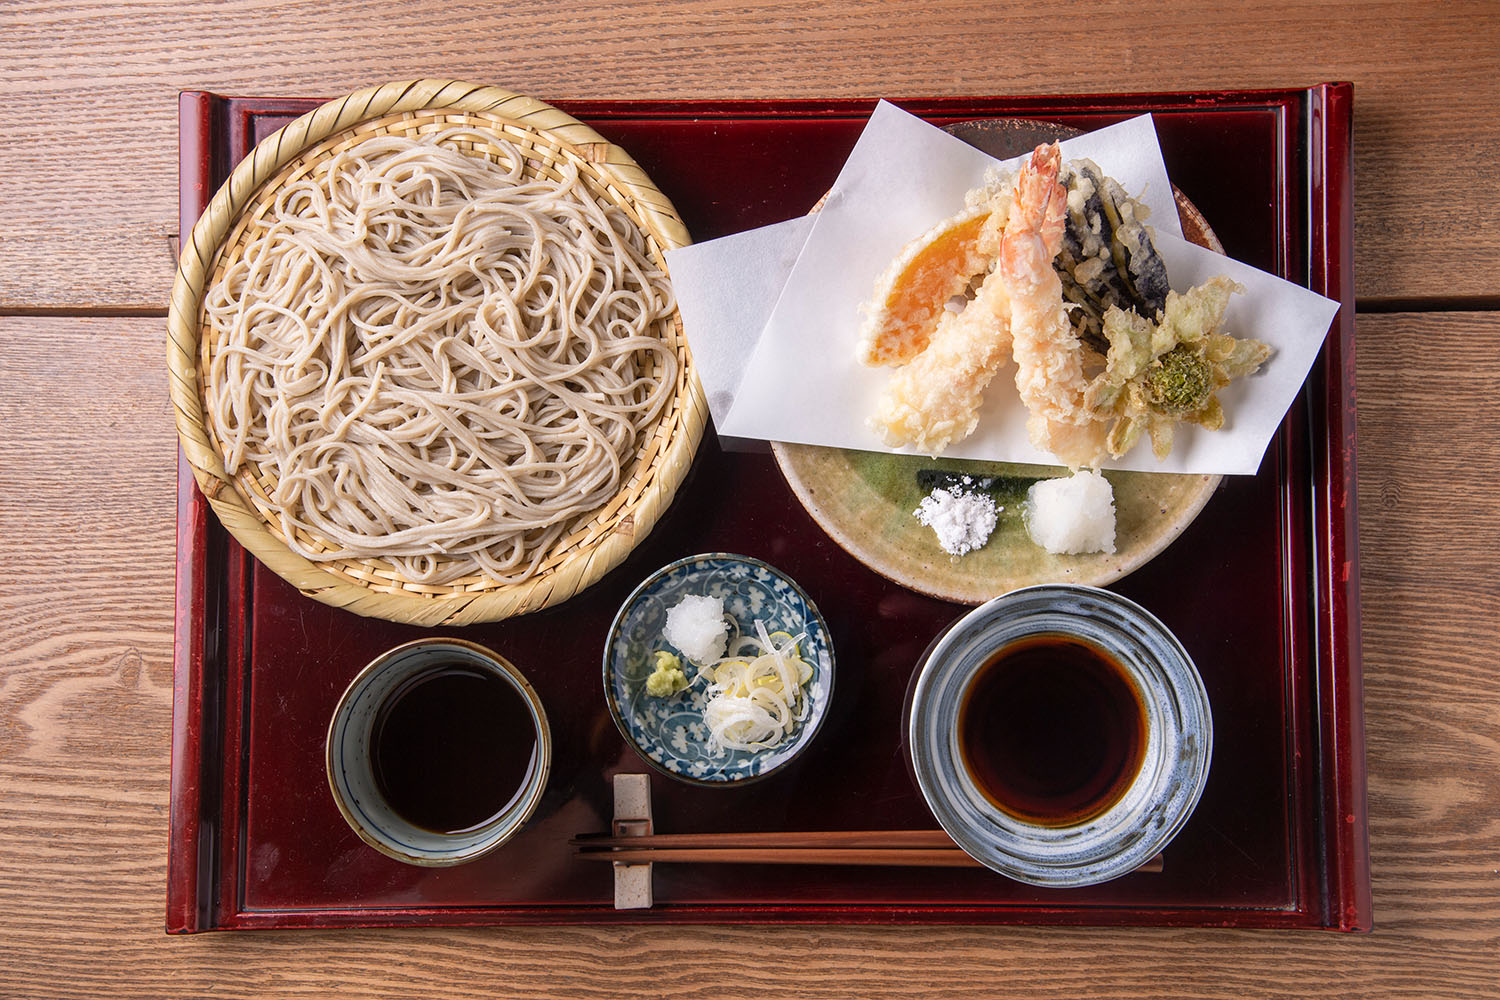 海老天せいろ1550円。天ぷらは、東久留米の市場で仕入れた旬の野菜などを揚げる。